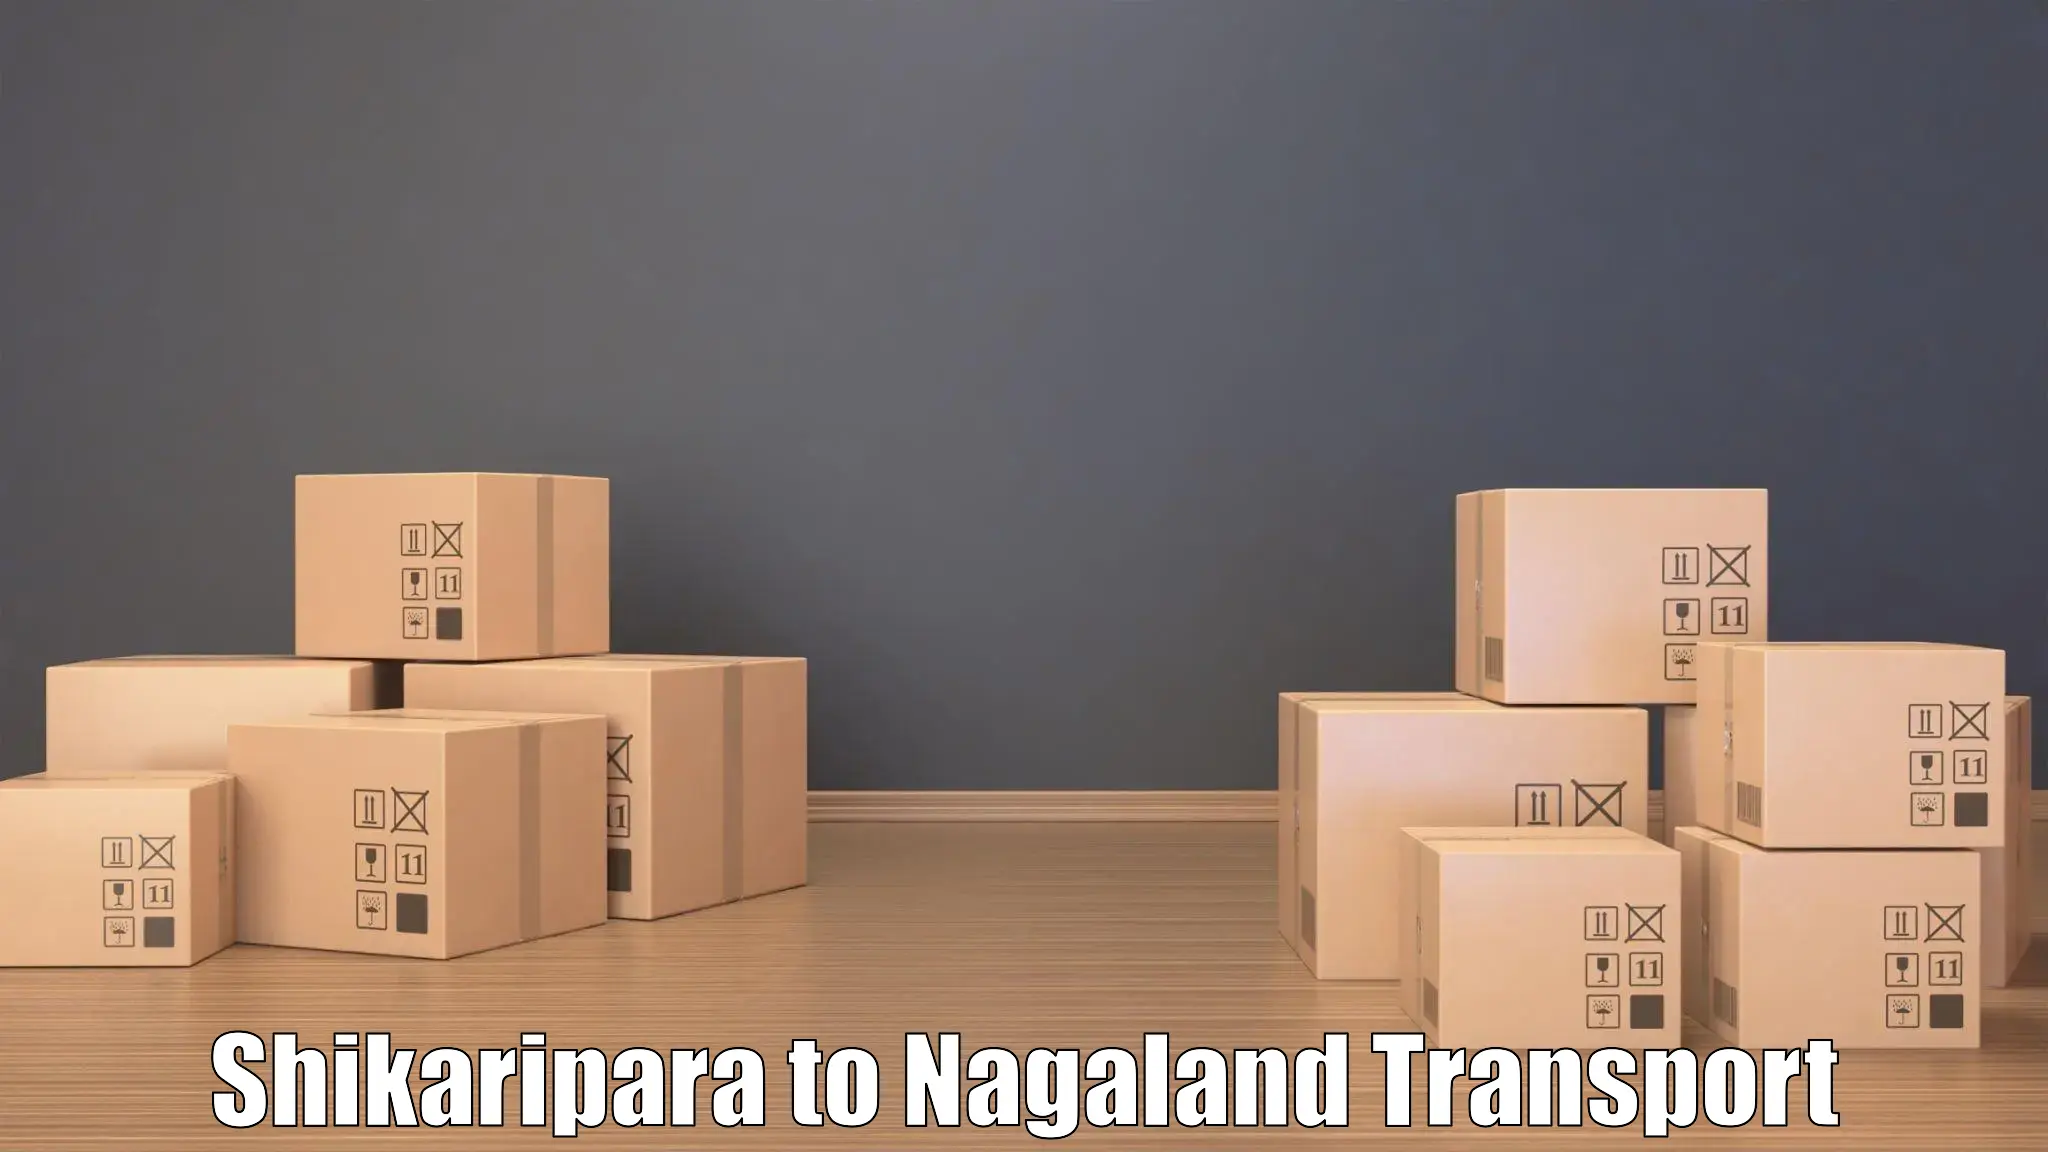 Bike transport service Shikaripara to Nagaland